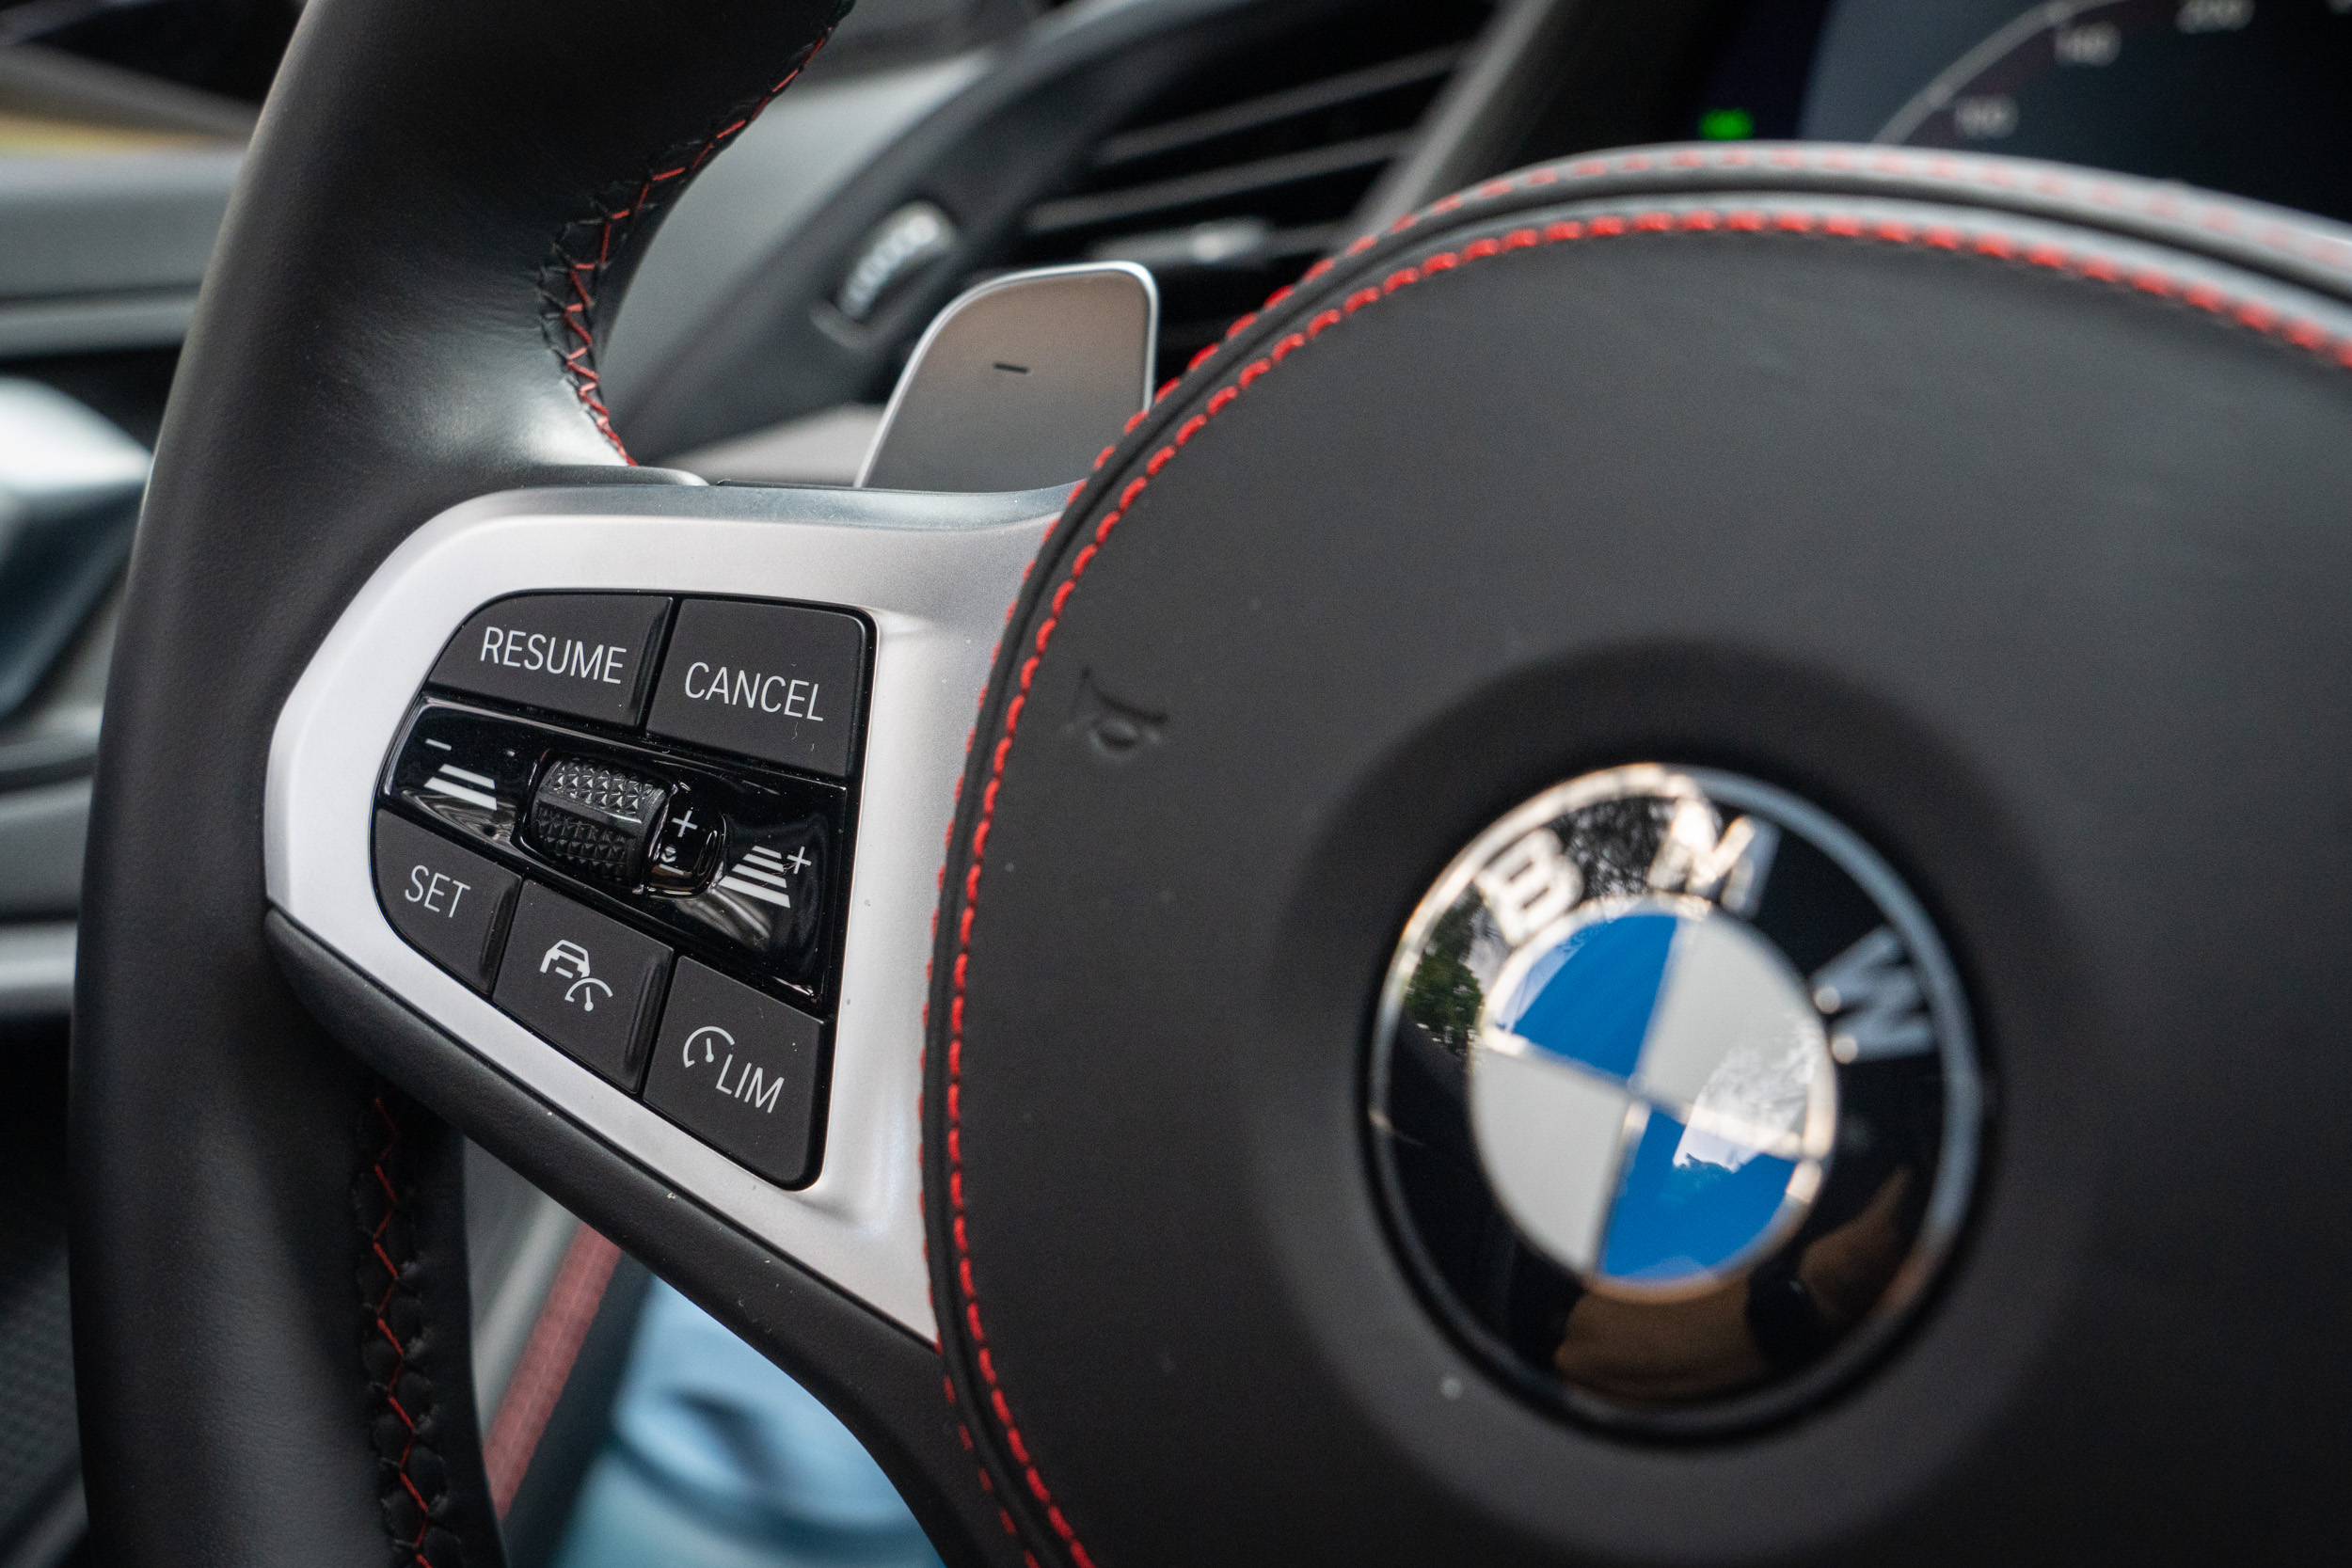 標配 BMW 智慧互聯駕駛系統，像是主動車距定速控制系統、車道偏離警示、盲點偵測警示、後方車流警示等皆配備。